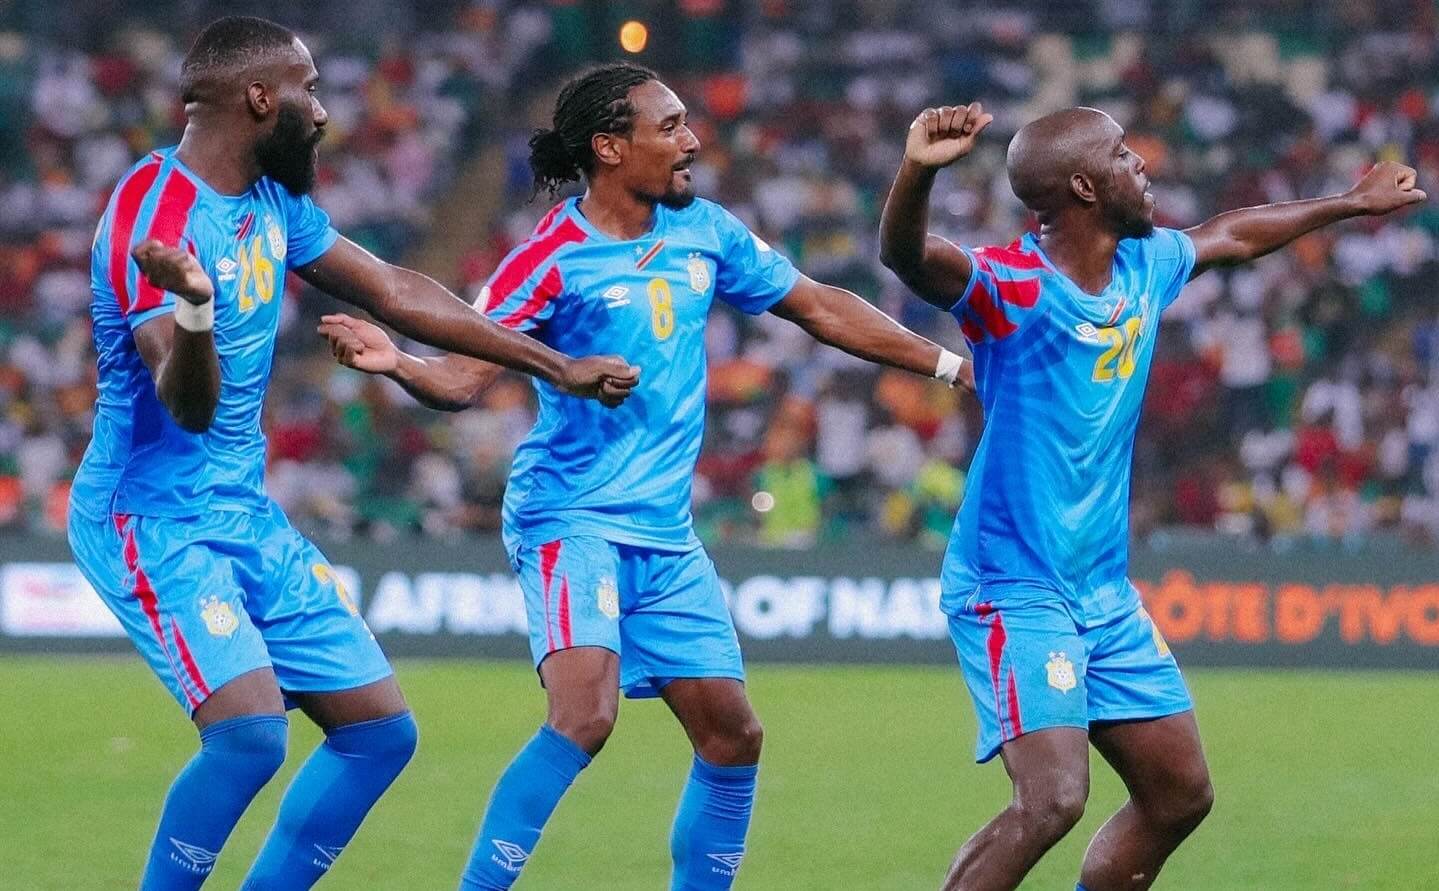 ԿԴՀ-ի  հավաքականի պաշտպանի ֆանտաստիկ գոլը տուգանայինի իրացումից հետո Գվինեայի դեմ խաղում🎥